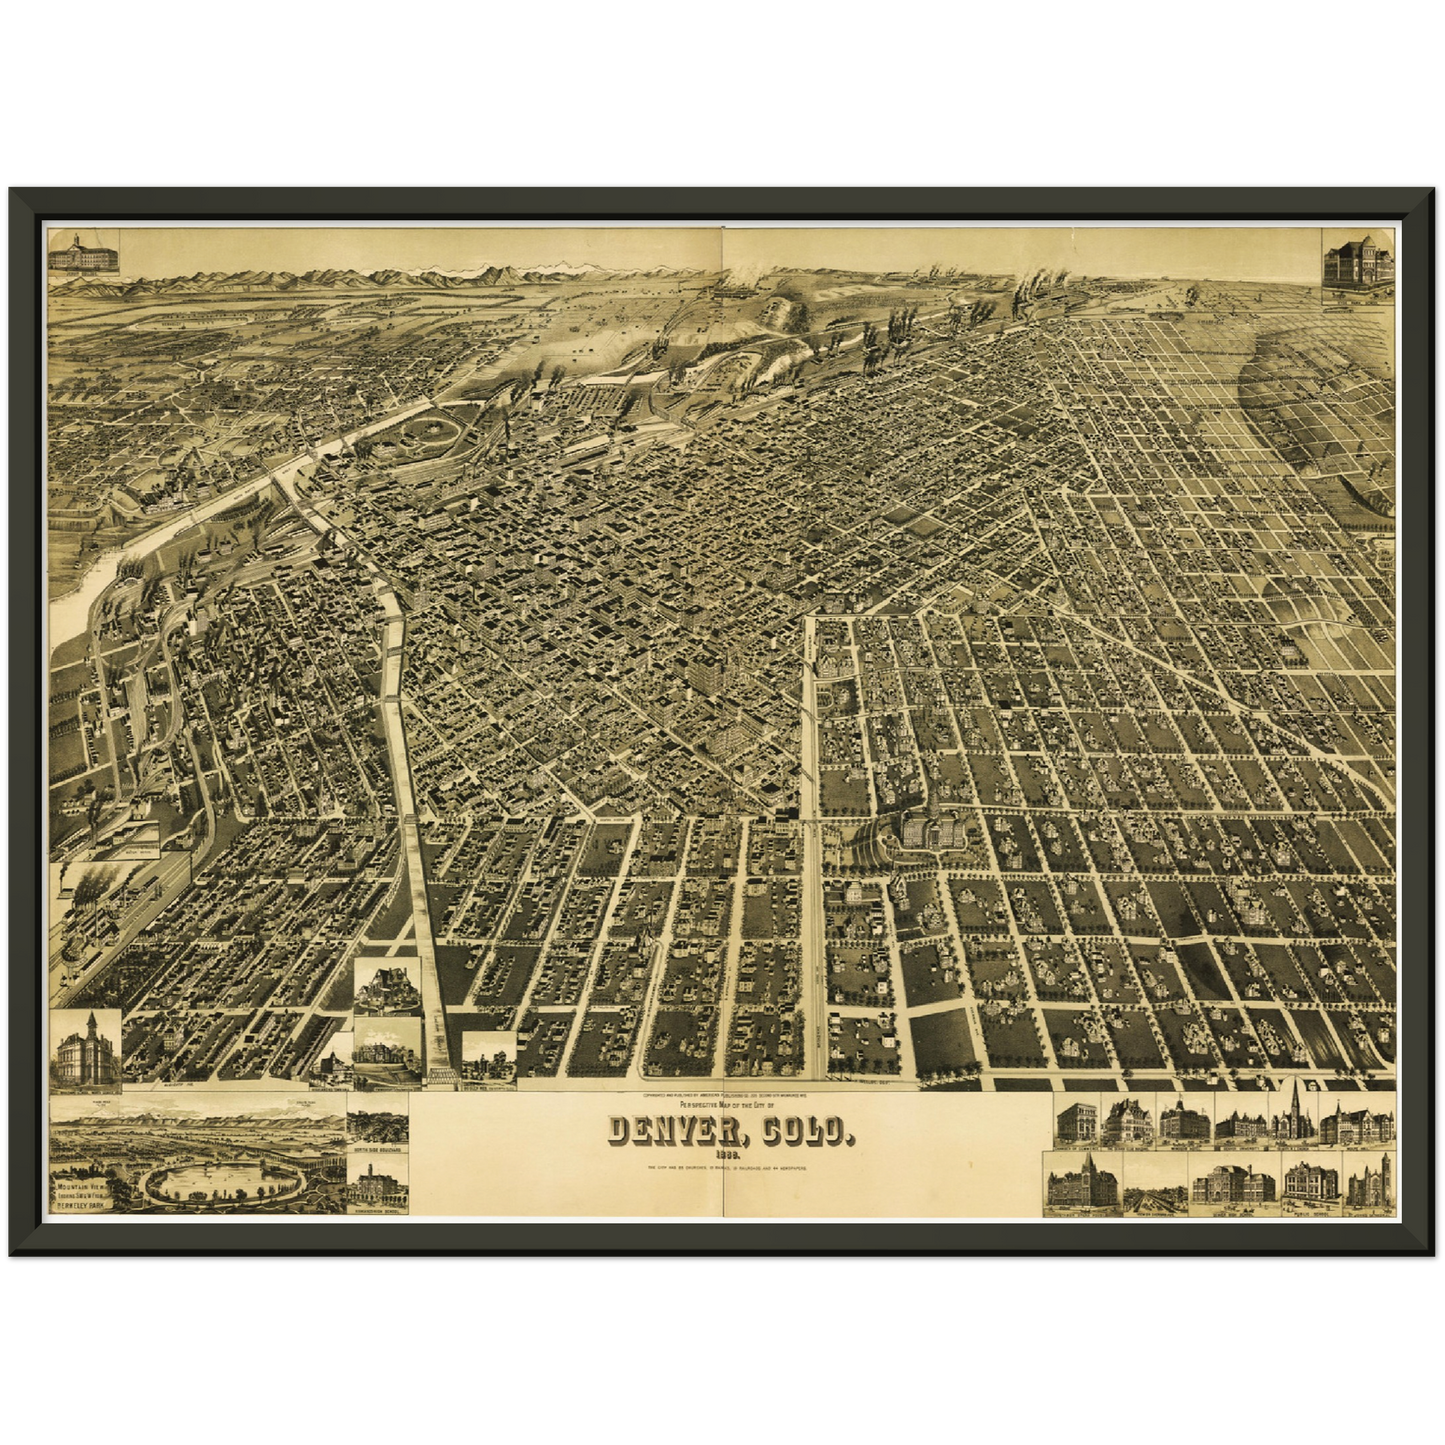 Historische Stadtansicht Denver um 1889